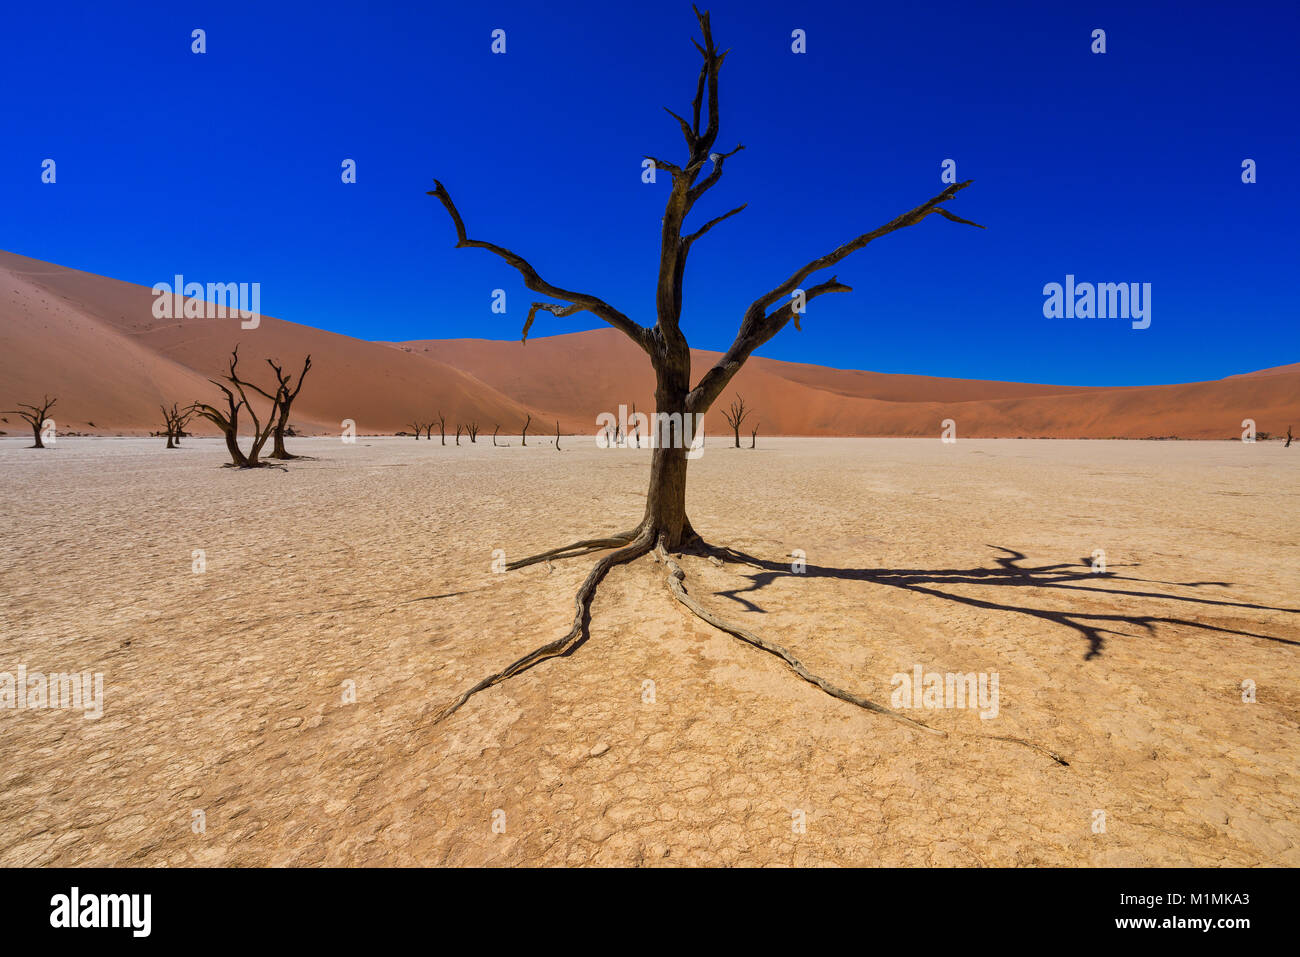 Sand dunes in desert, Deadvlei, Namib Naukluft National Park, Namibia Stock Photo